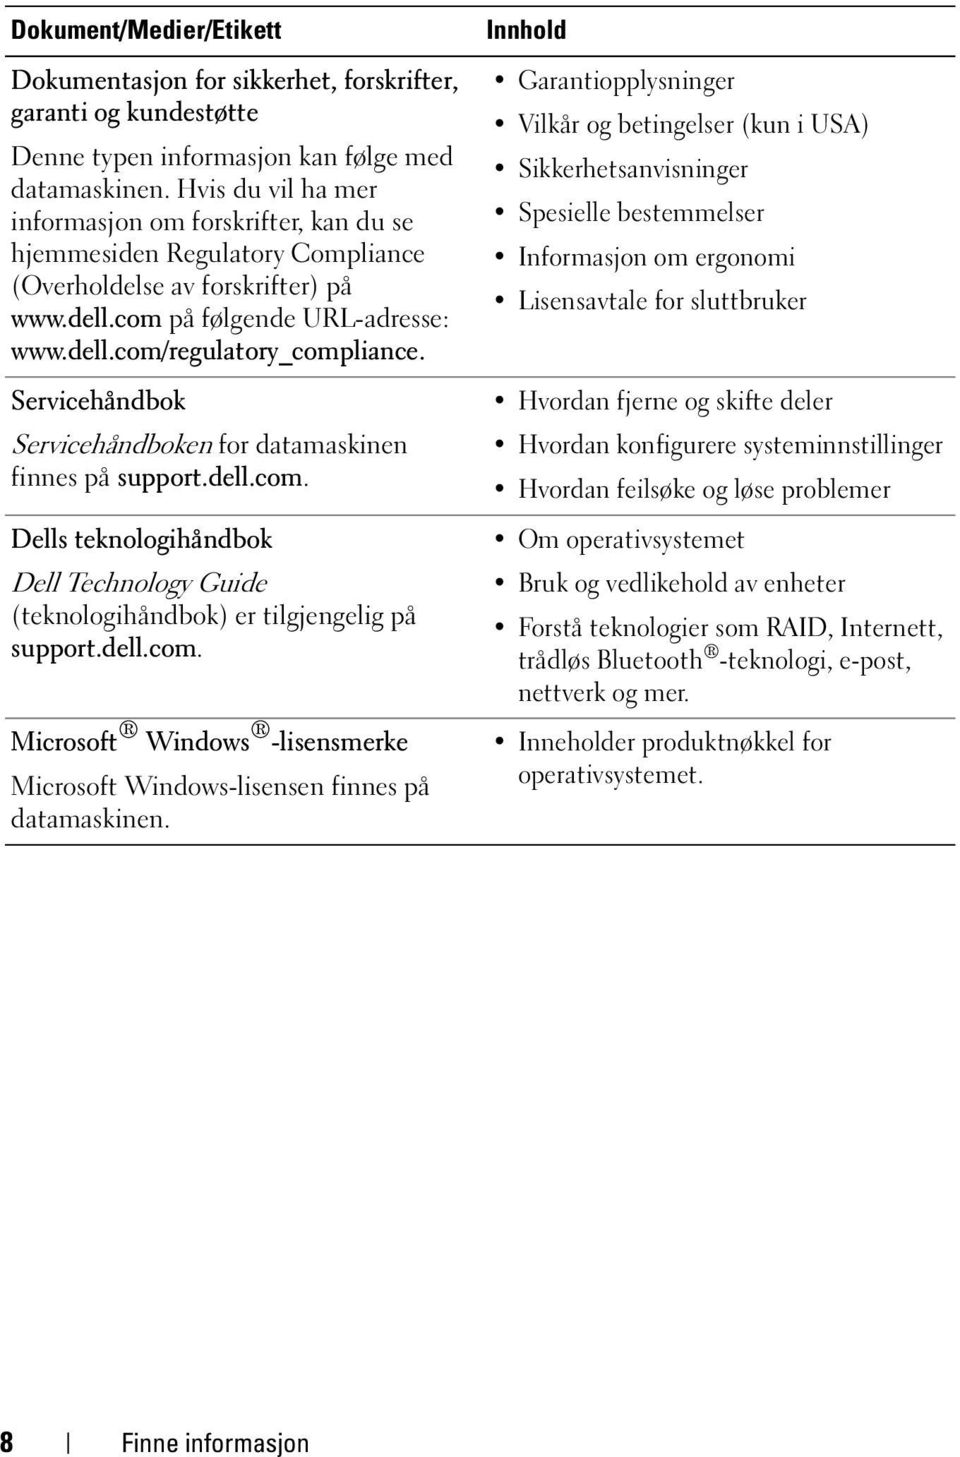 Servicehåndbok Servicehåndboken for datamaskinen finnes på support.dell.com. Dells teknologihåndbok Dell Technology Guide (teknologihåndbok) er tilgjengelig på support.dell.com. Microsoft Windows -lisensmerke Microsoft Windows-lisensen finnes på datamaskinen.